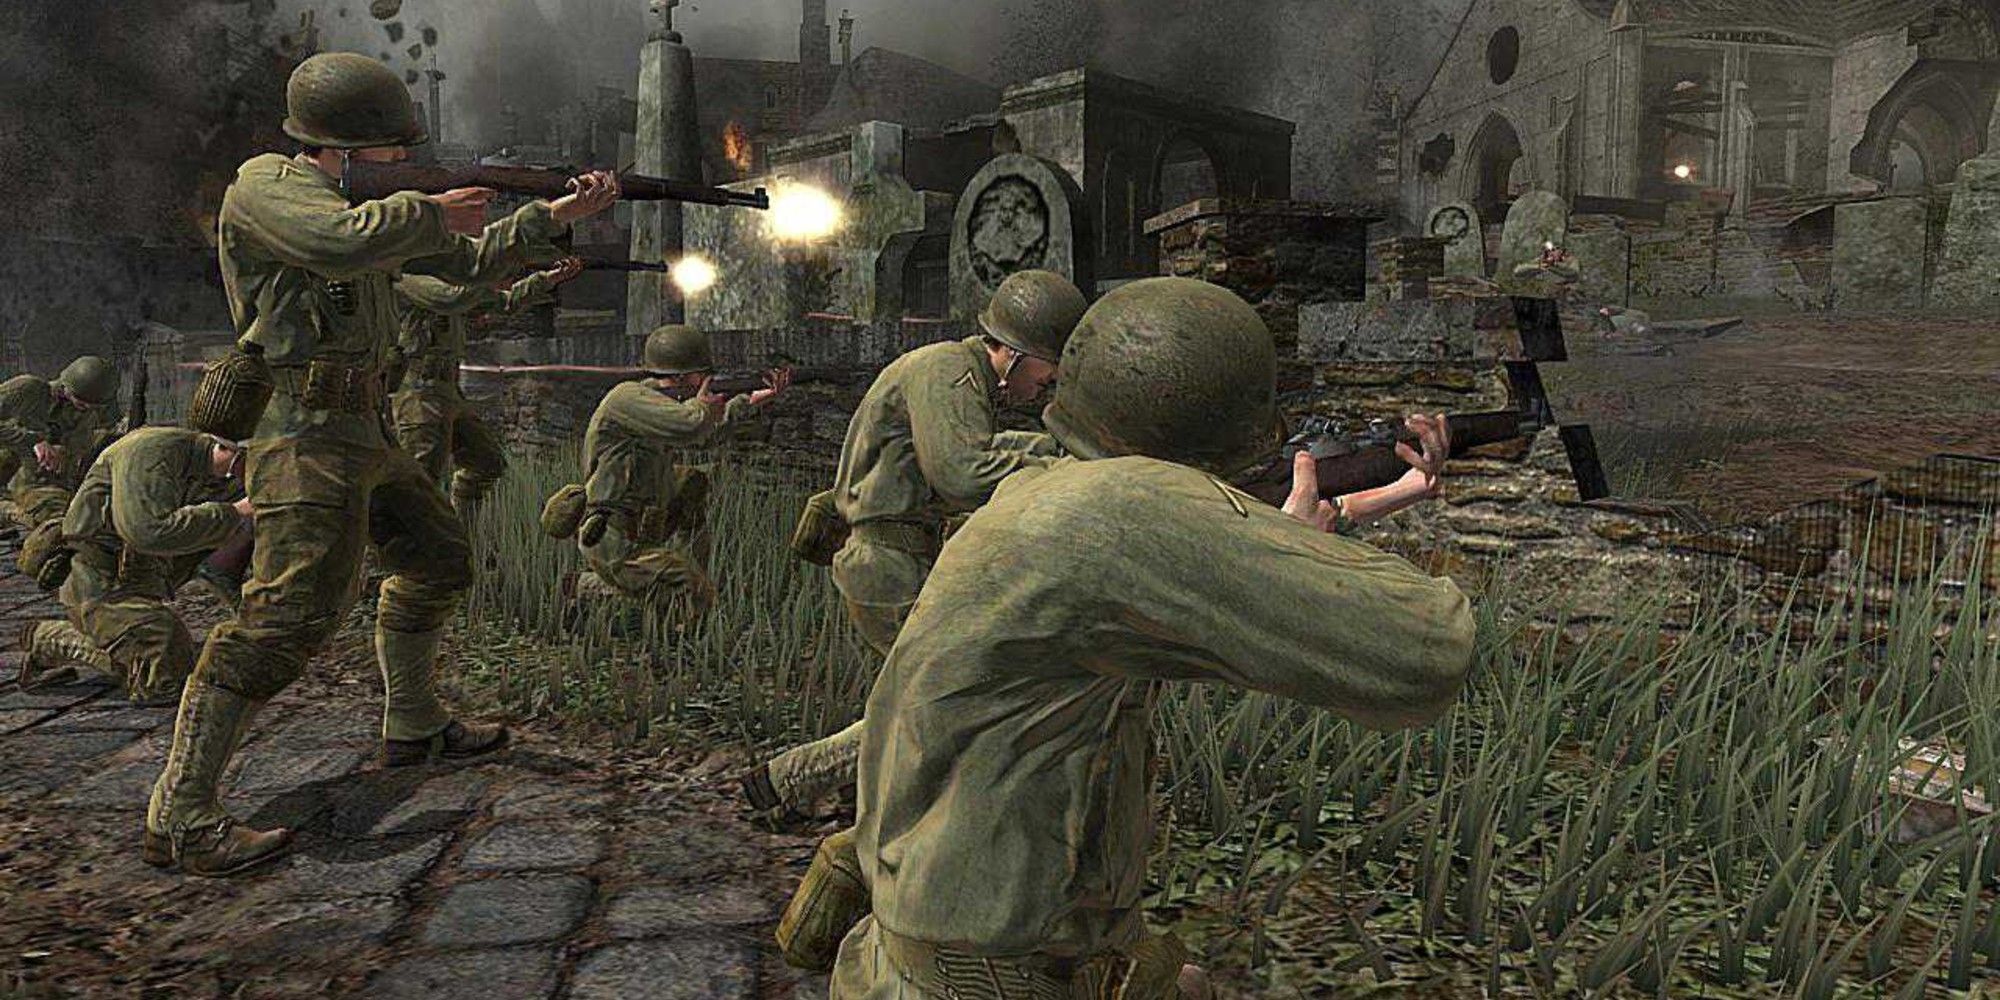 produceren overhandigen Distilleren The Era of World War II First-Person Shooter Games Finally May Be Over